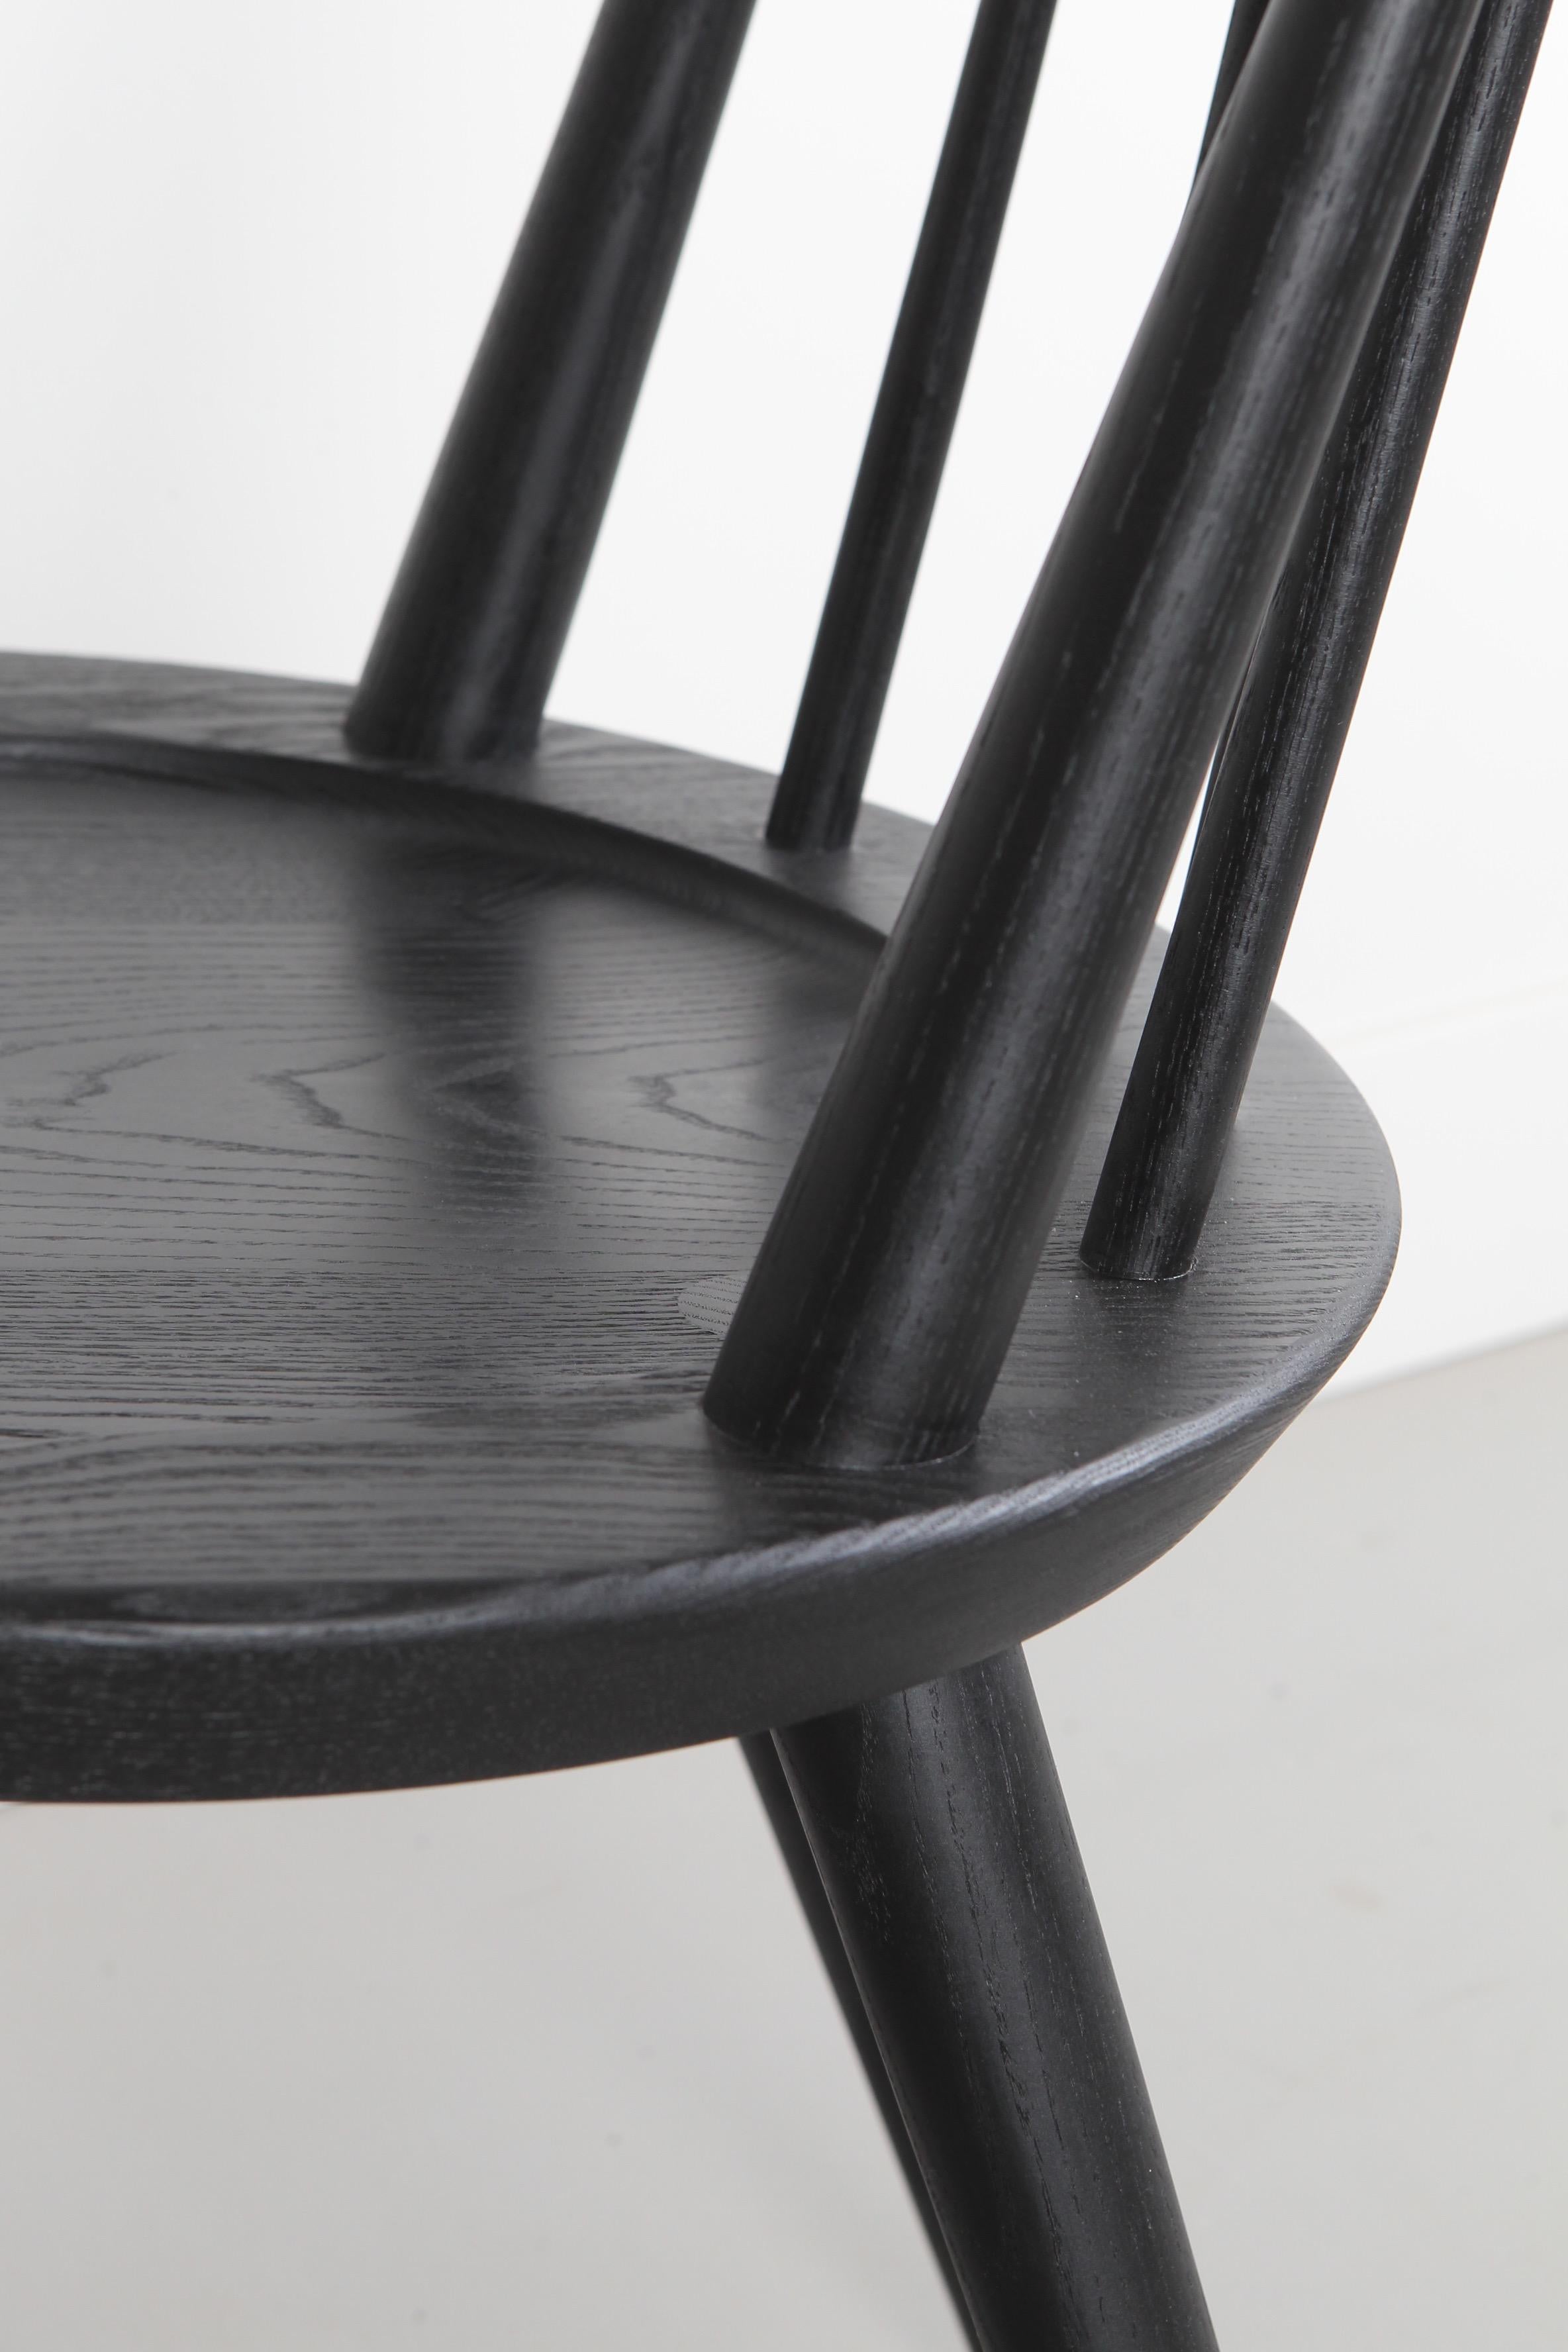 Der Vände-Stuhl ist eine moderne Interpretation des klassischen Windsor-Stuhls. Die handgedrechselten Spindeln sind verkeilt und mit Zapfen und Schlössern versehen, um Stärke und Ästhetik zu gewährleisten.

Die runde Sitzfläche wurde für mehr